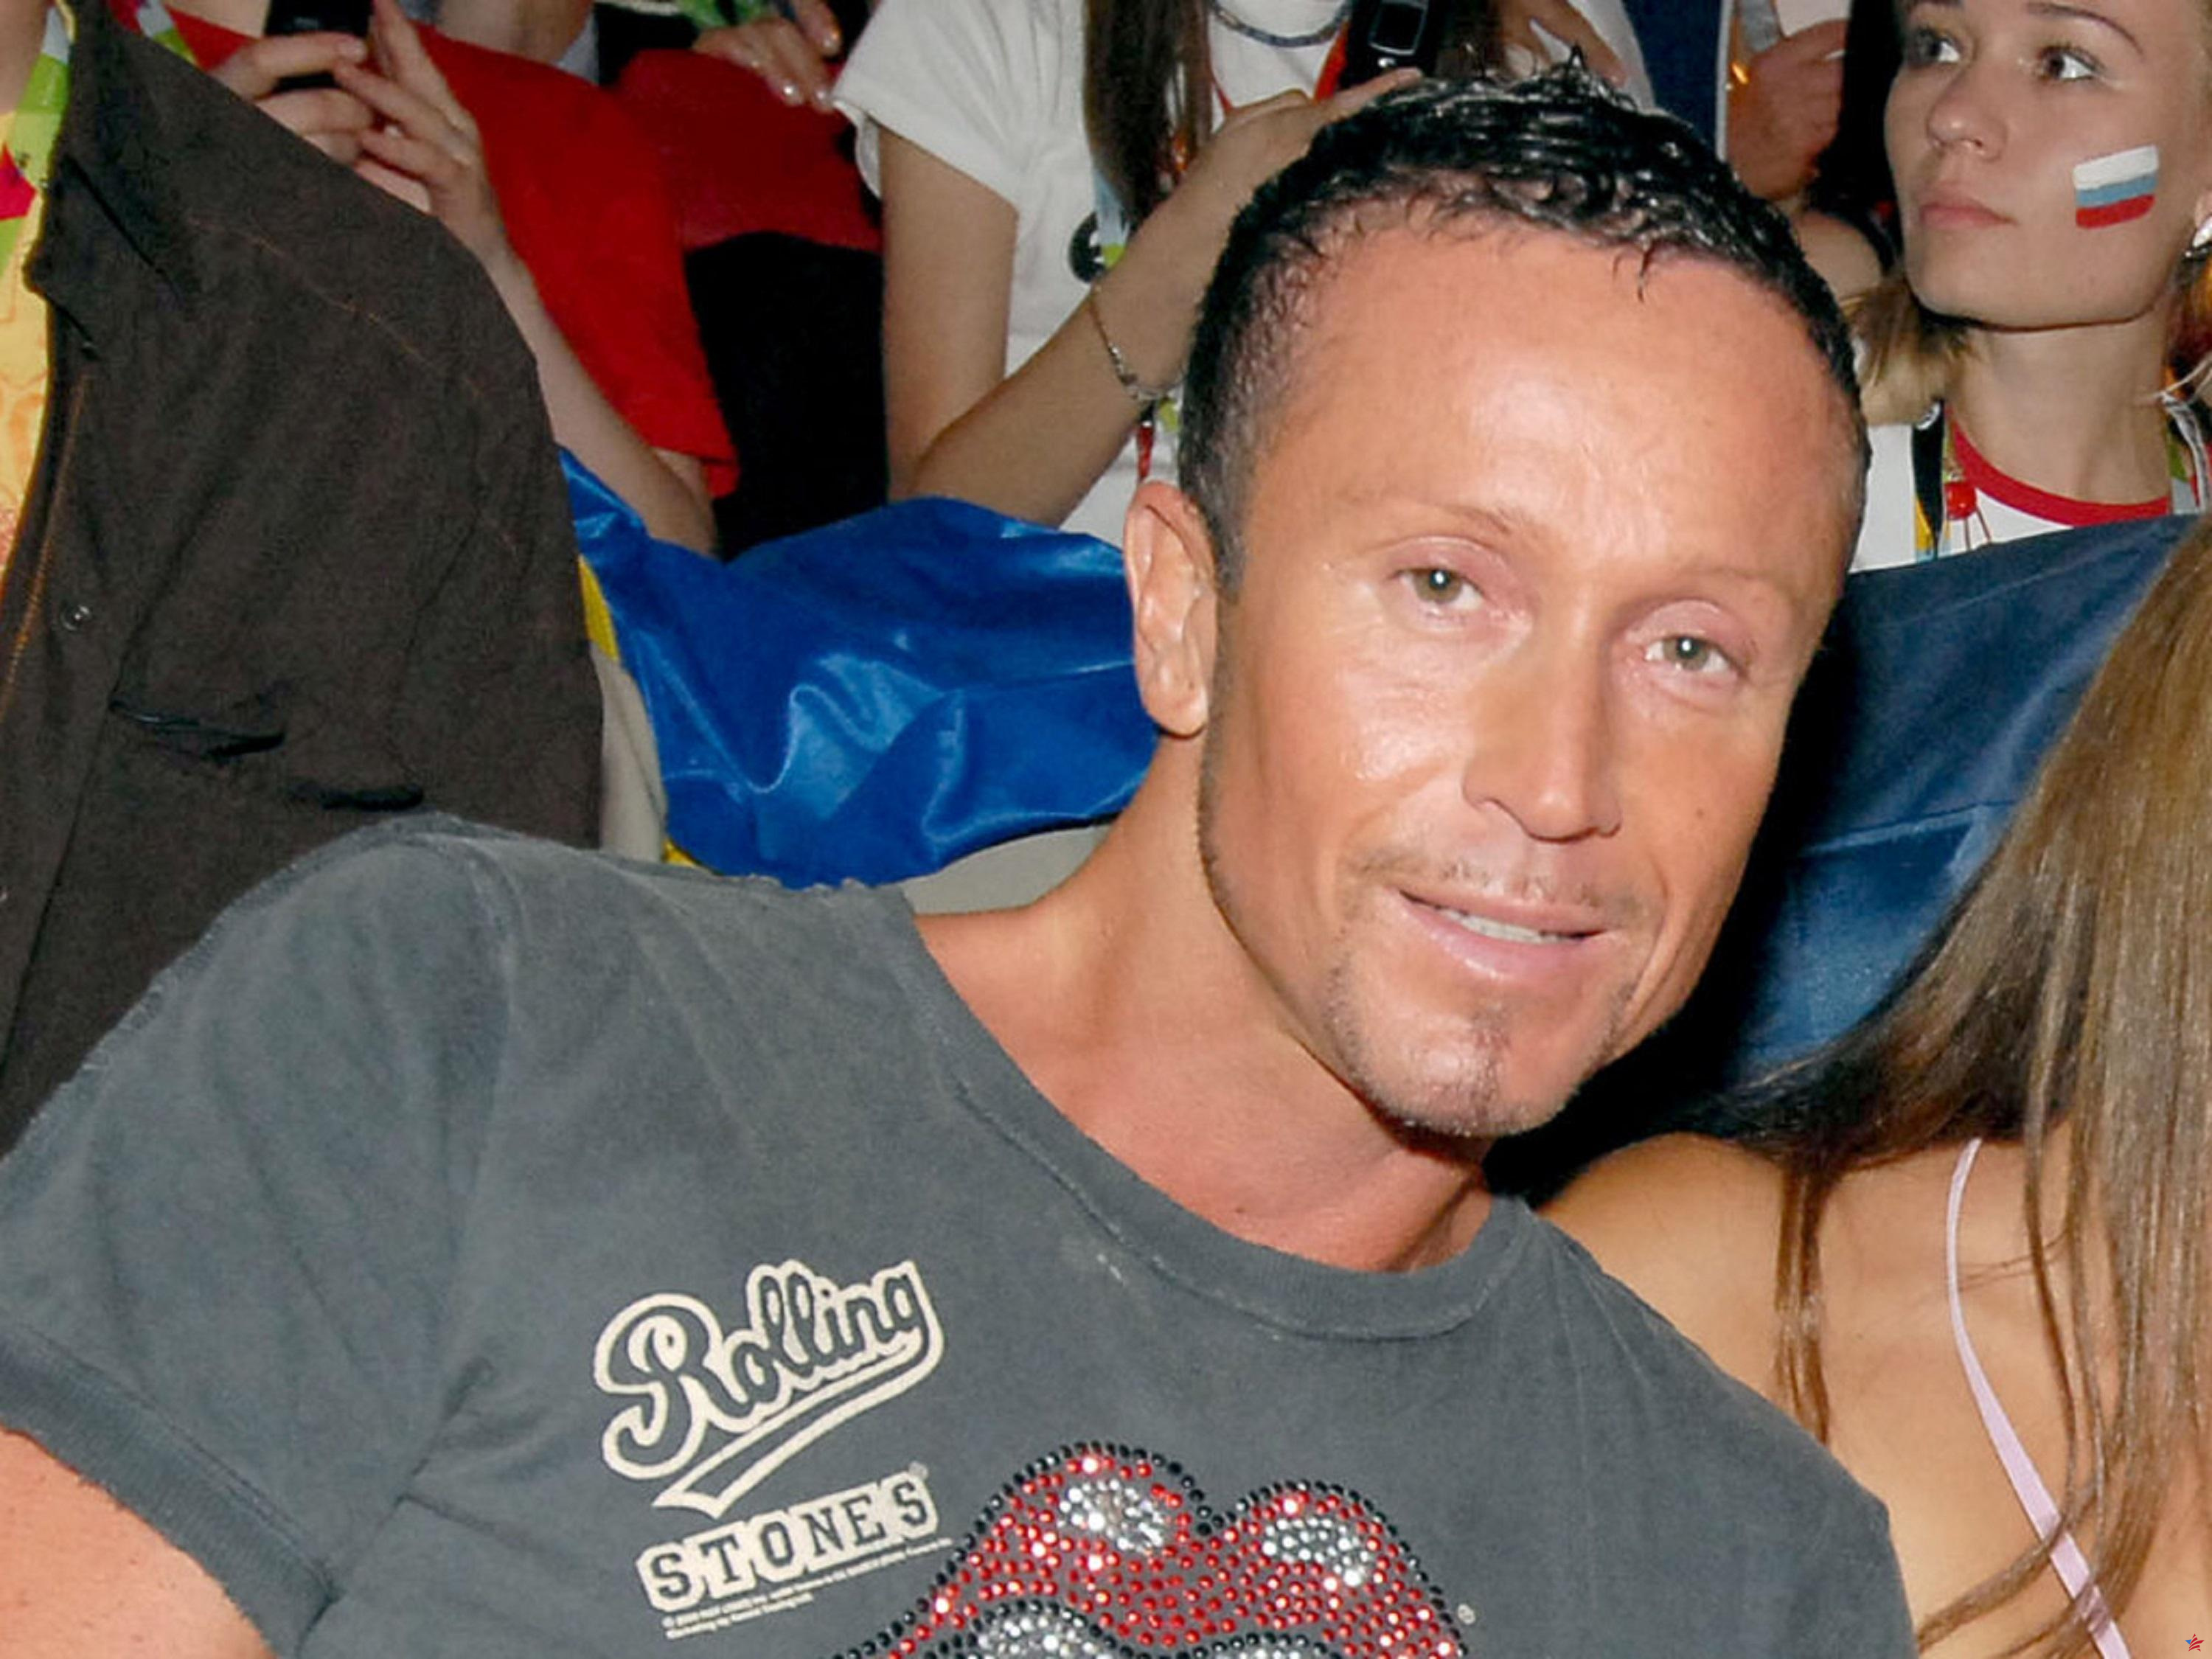 Dos denuncias contra el coreógrafo de Cannes Bruno Vandelli por “actos de naturaleza sexual”